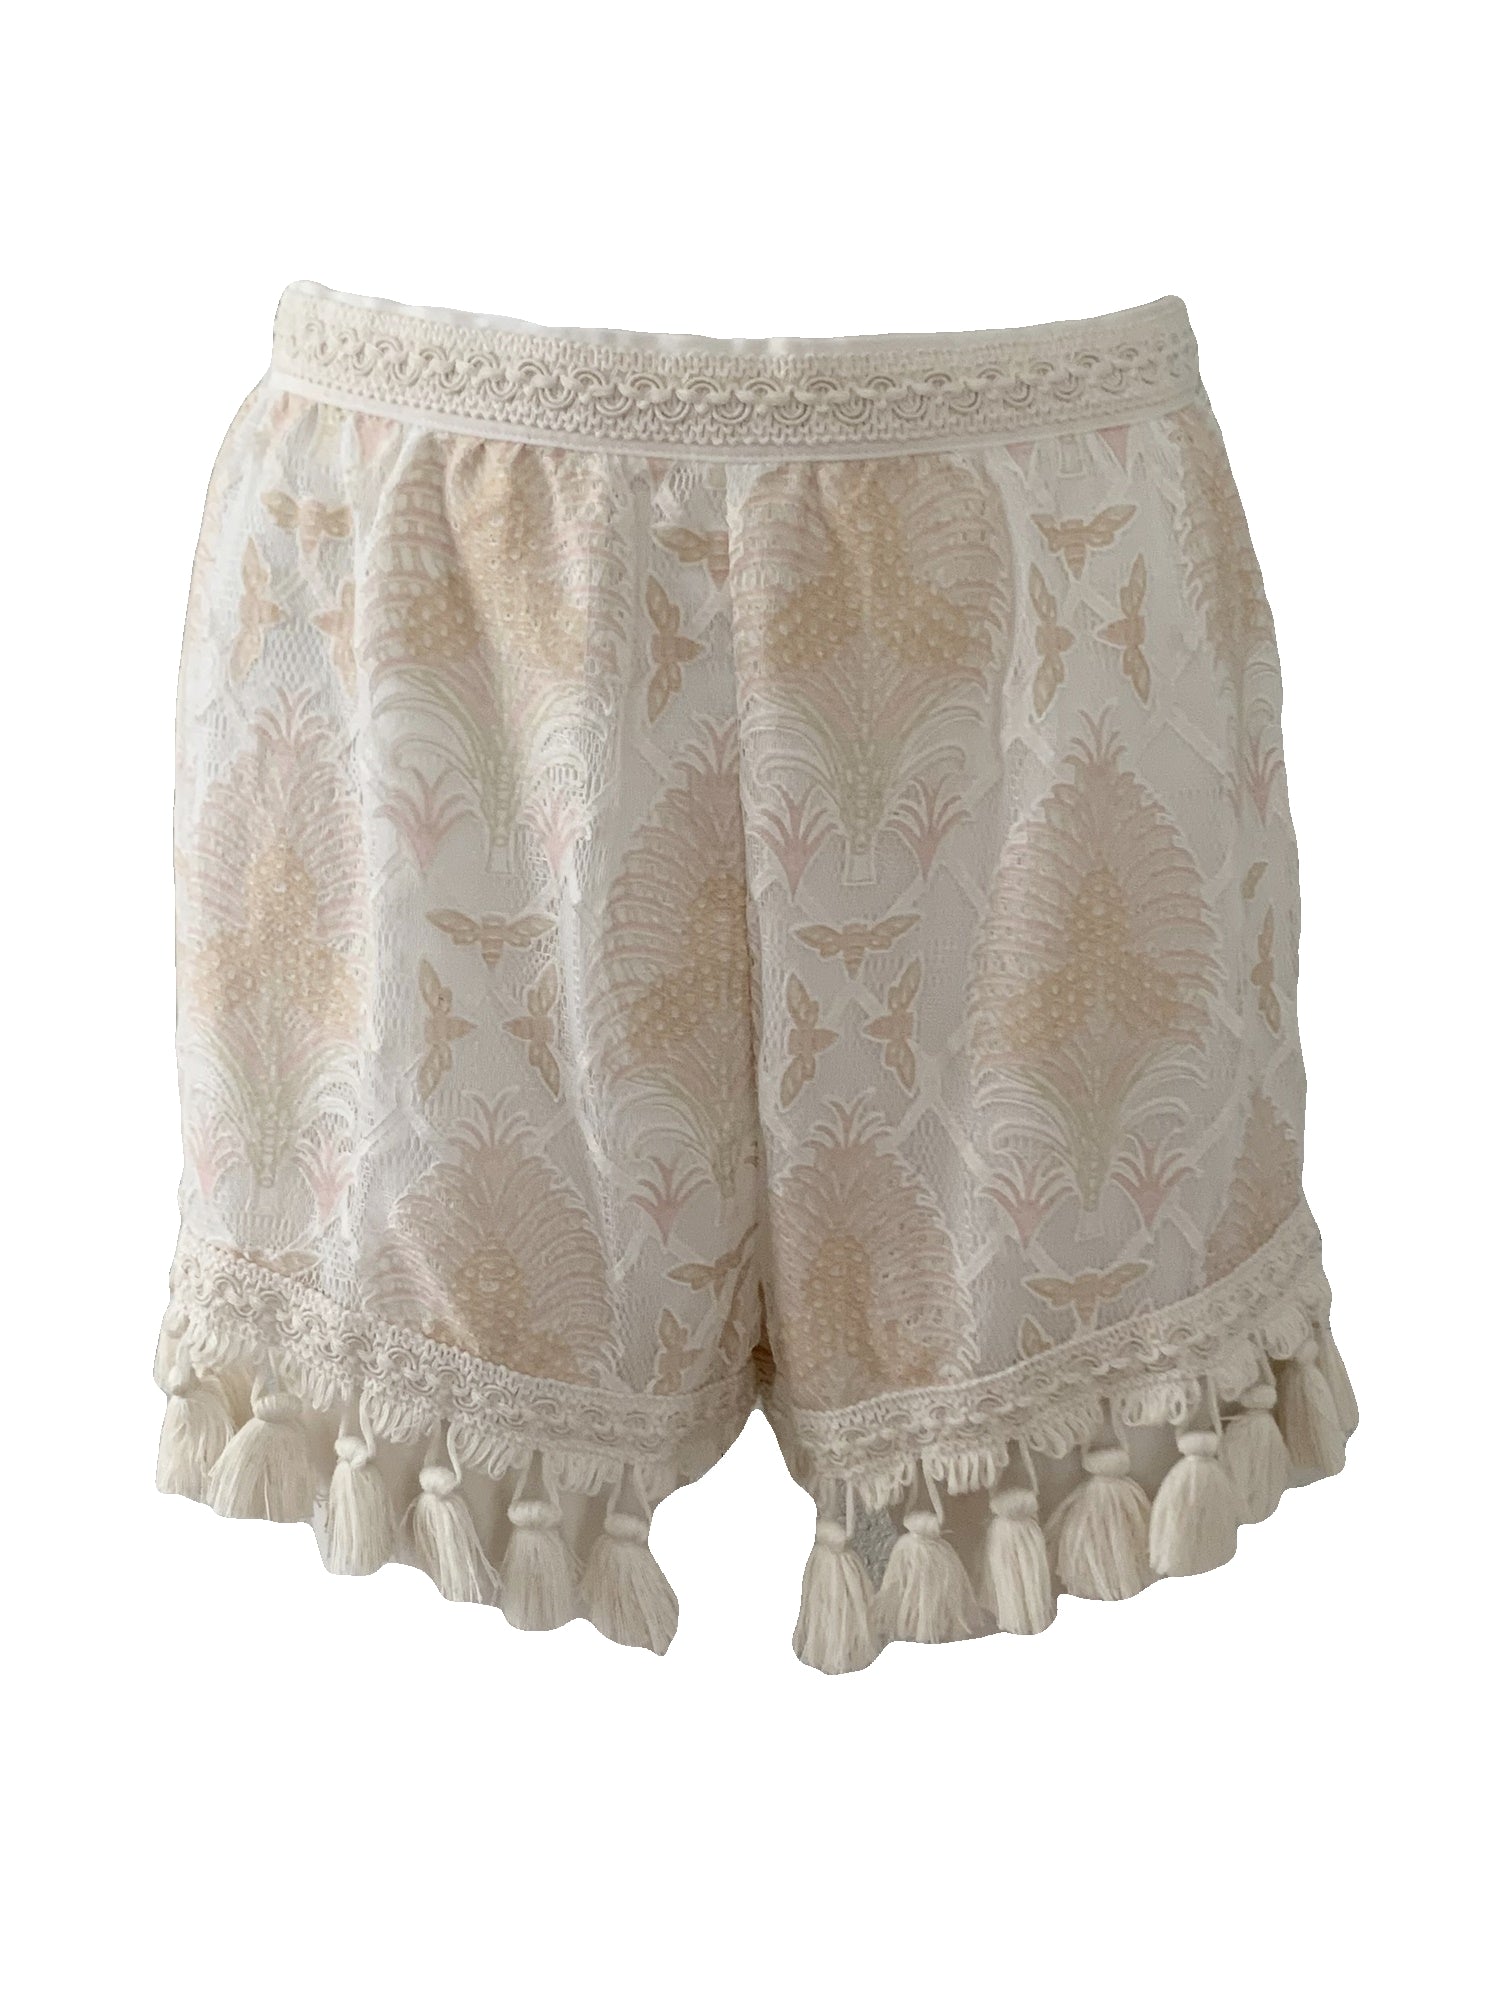 Le Freak Lace Shorts Size 4